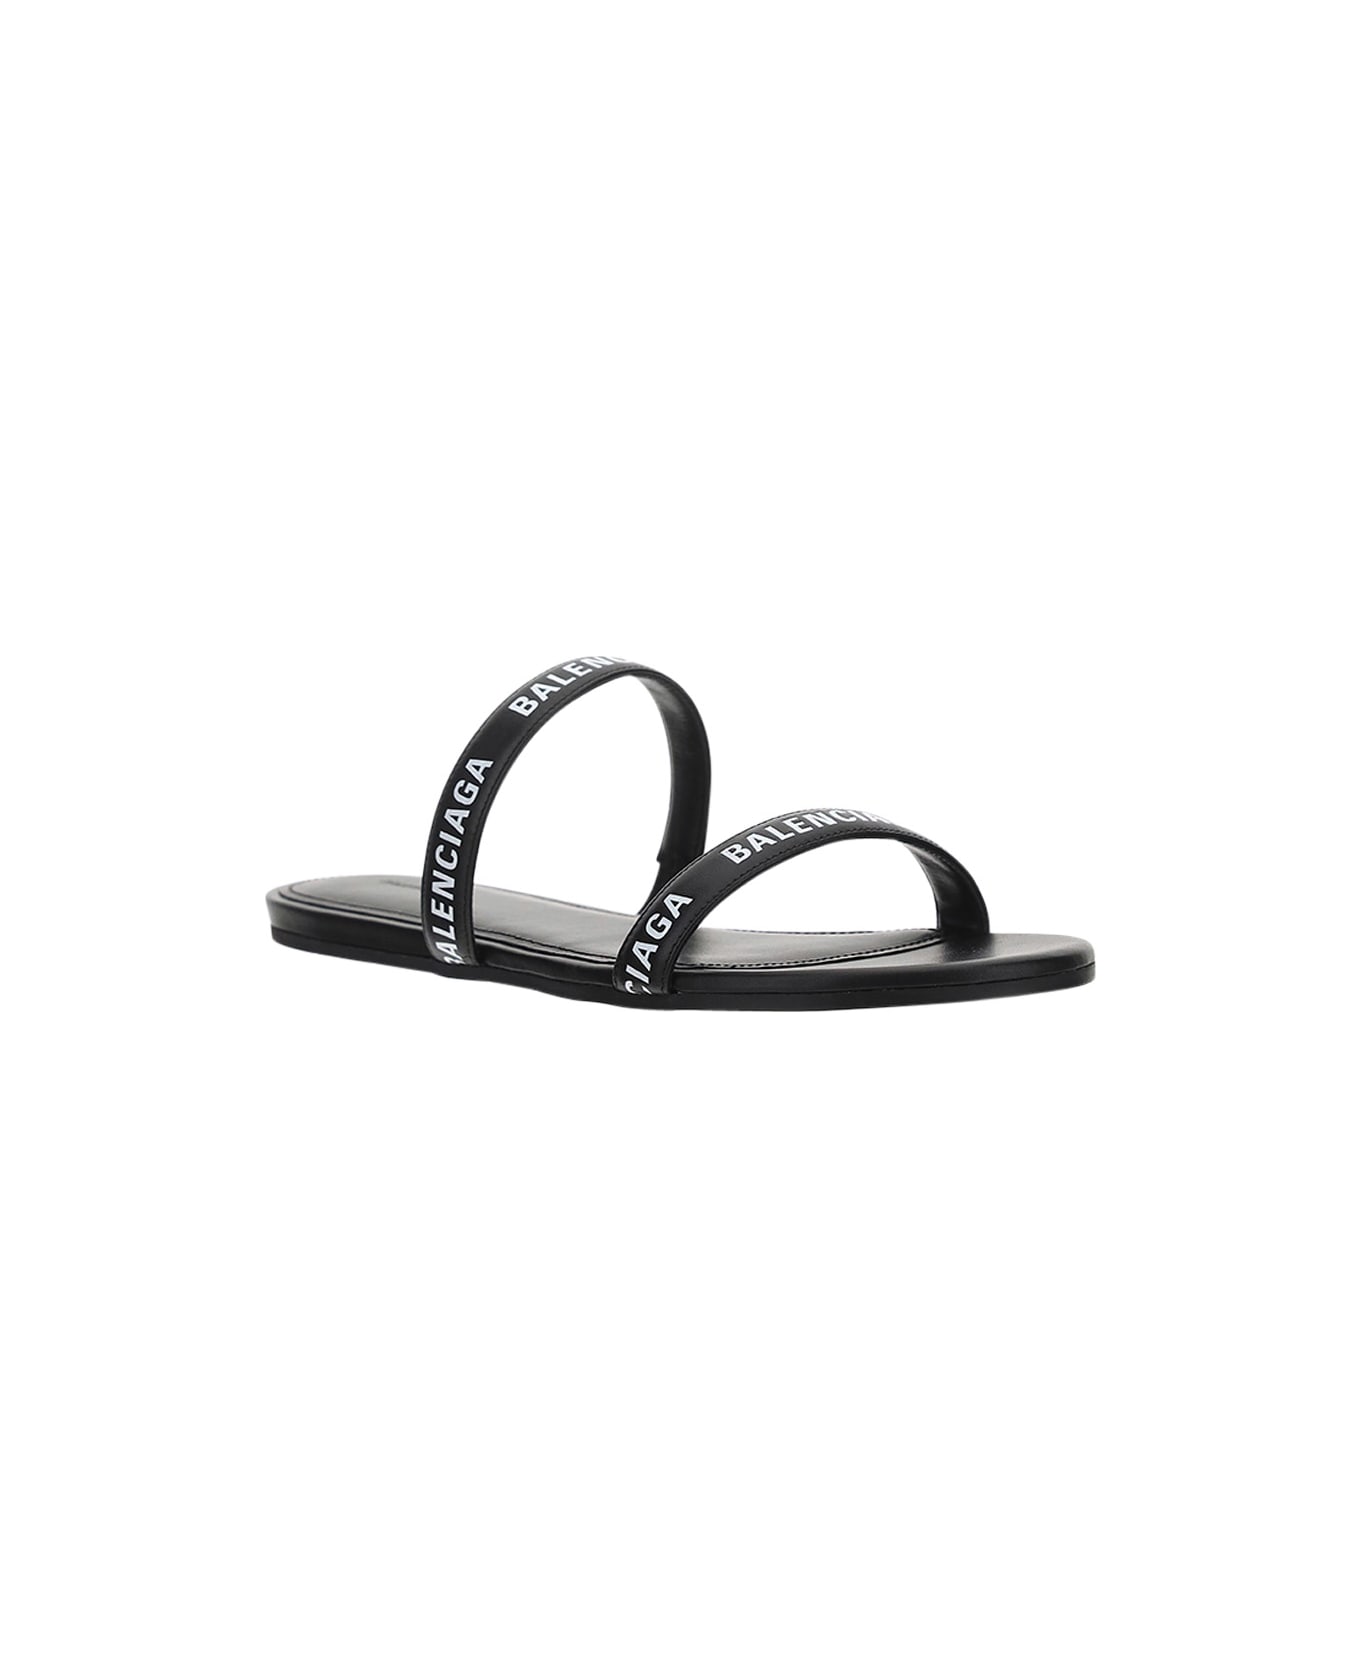 Balenciaga Round Sandal - Black/white